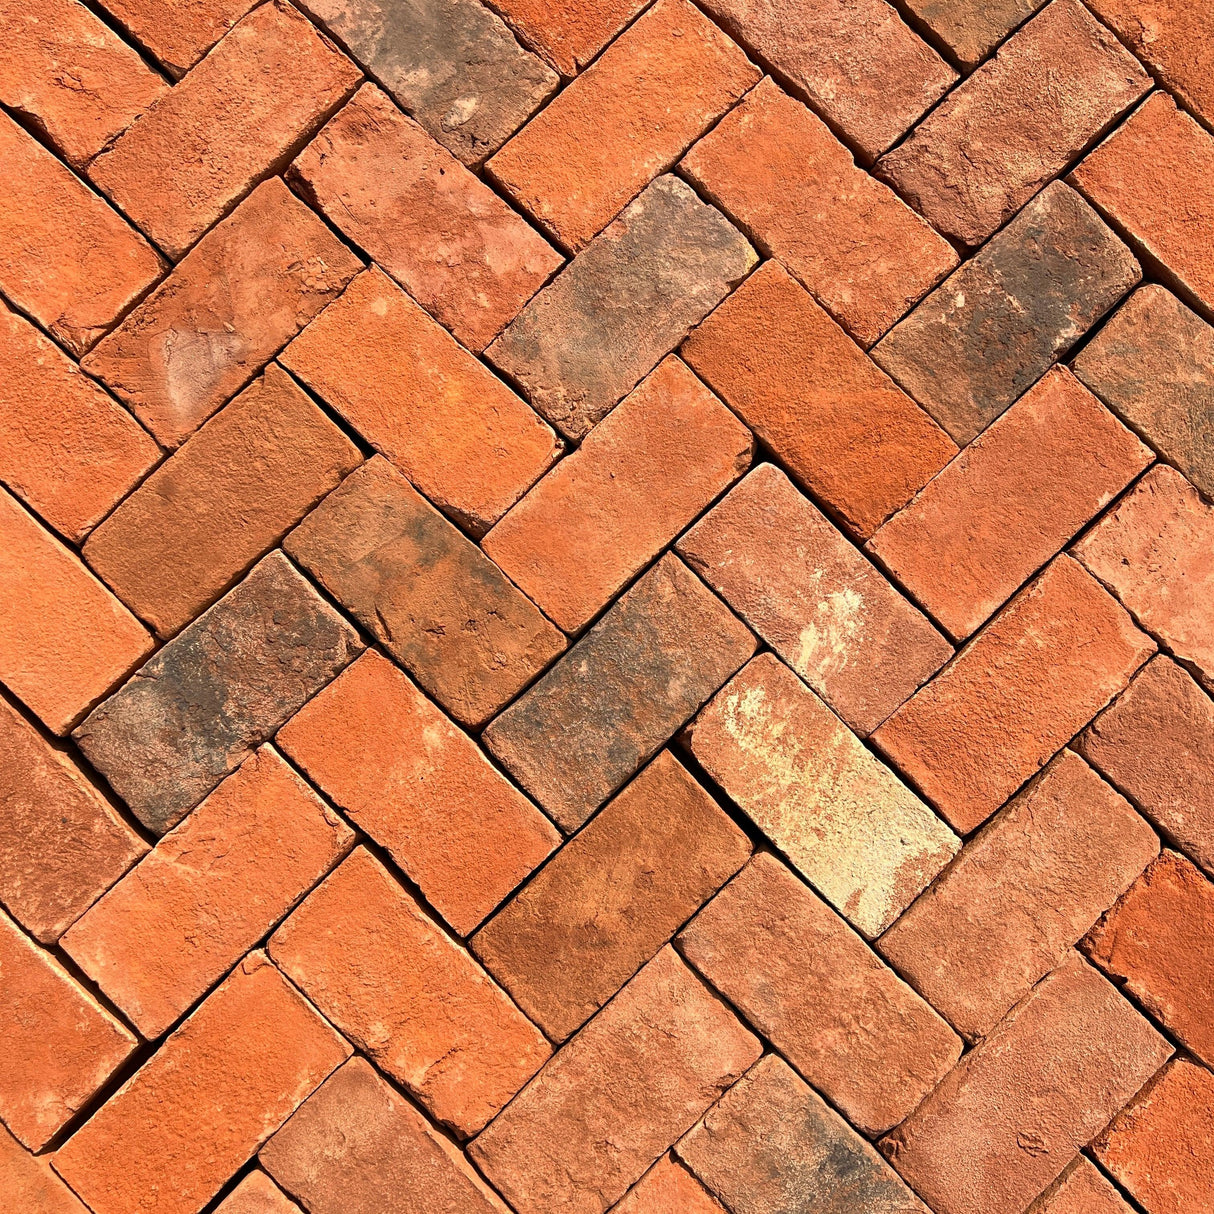 New Handmade Clay Paving Brick - Type 3 - Reclaimed Brick Company